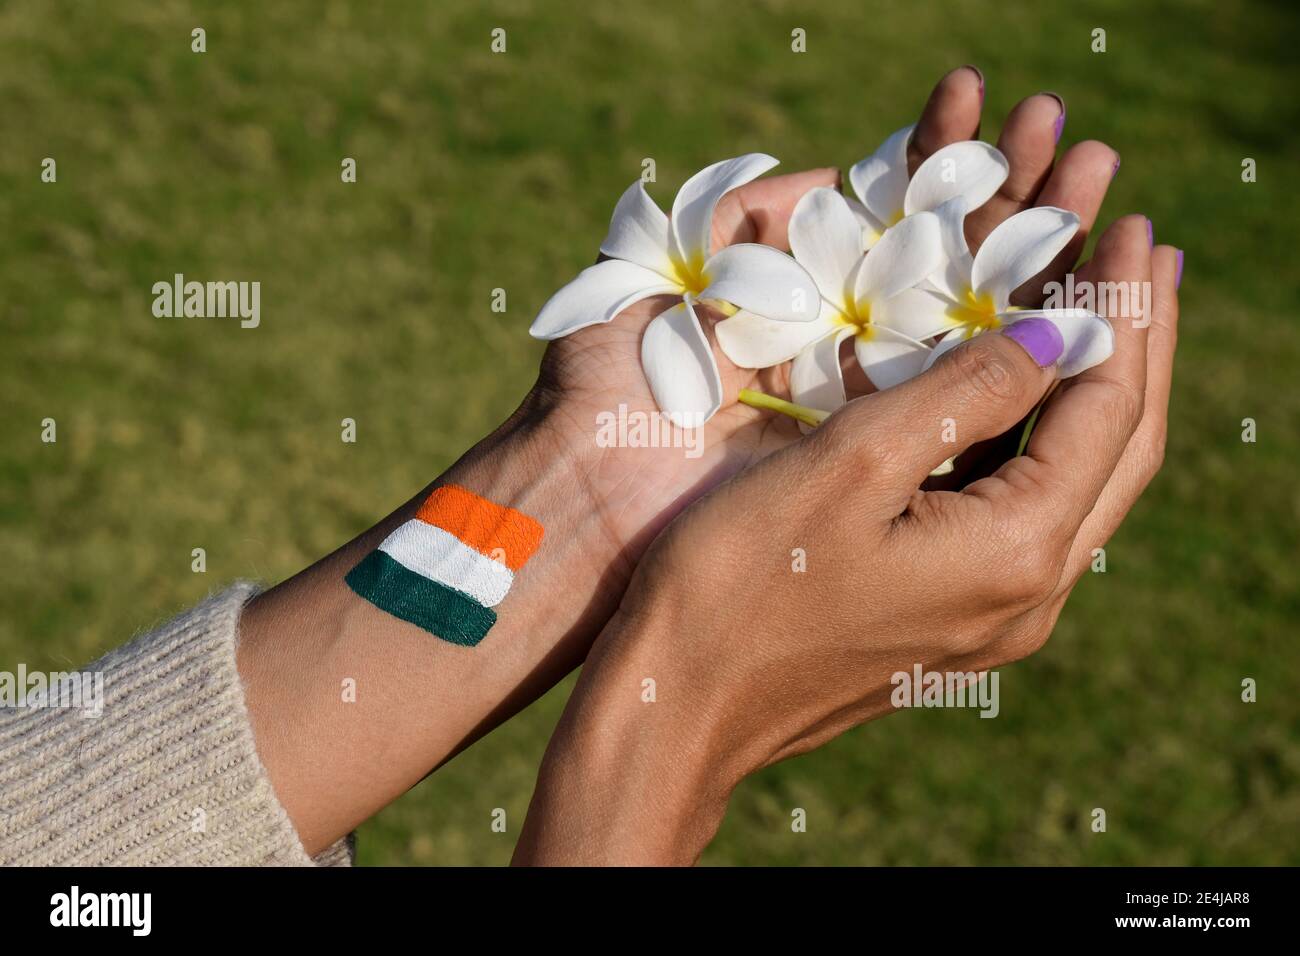 Weiblich mit indischen Flagge Tri Farbe Tattoo auf der Rückseite der Hand anlässlich der Indian republic Tag hält weiße Blumen, die Frieden symbolisieren. Stockfoto